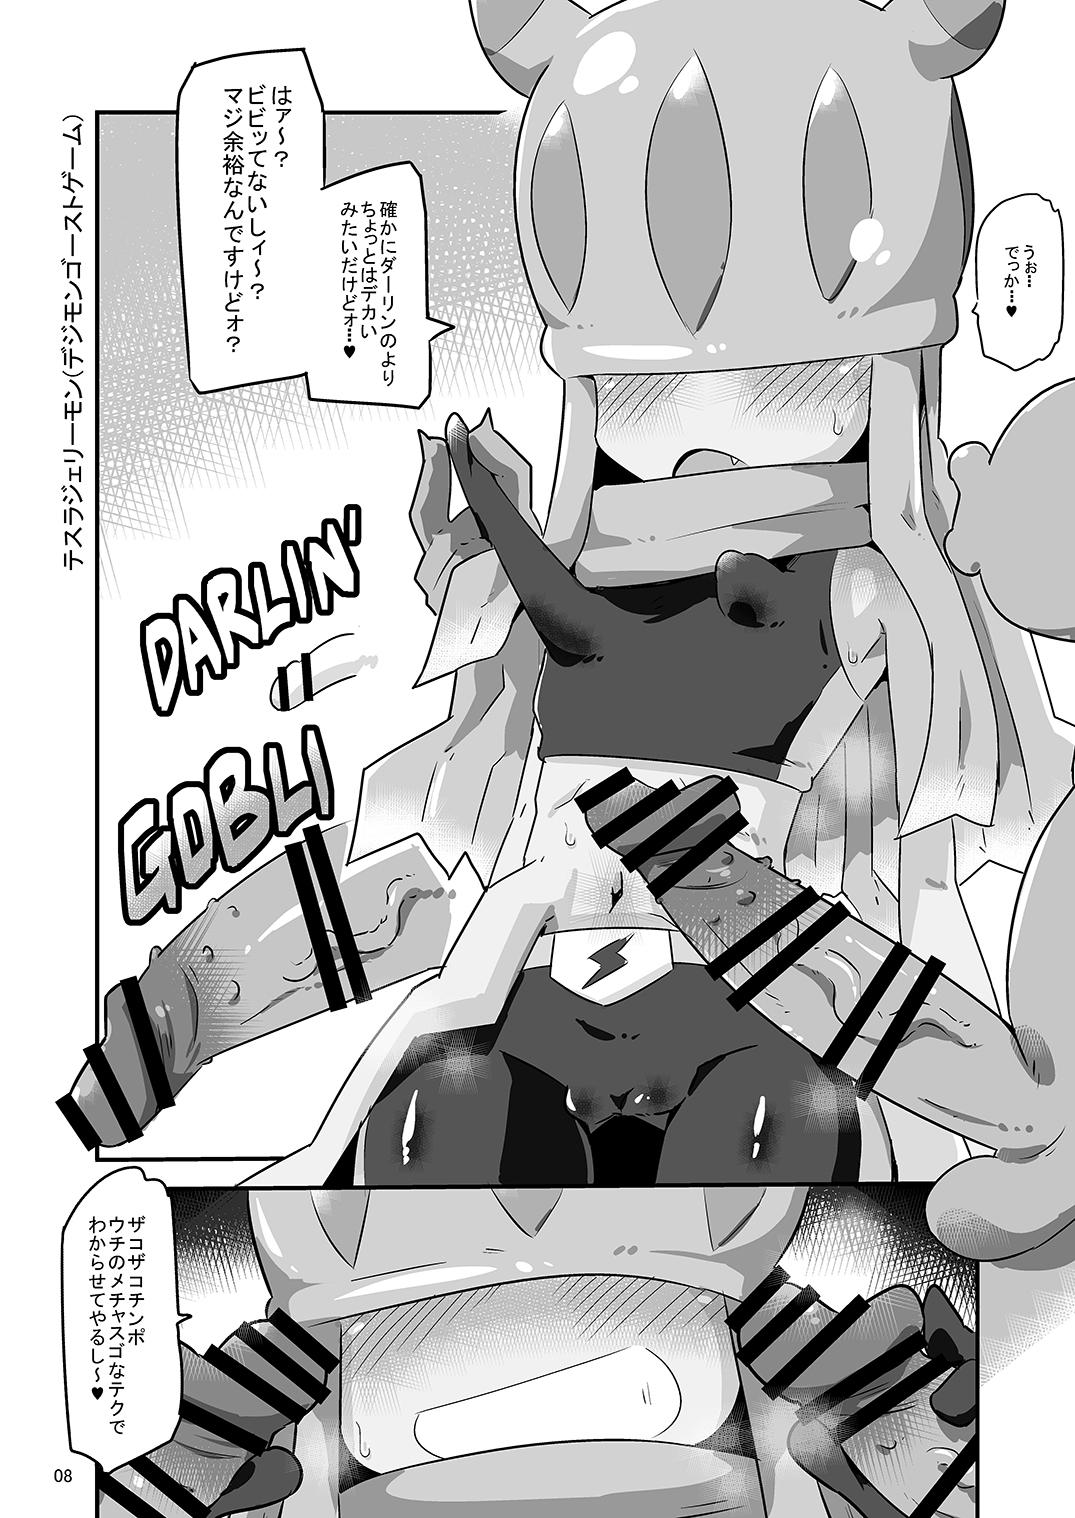 Lez Hardcore Gobli nanka ni Zettai Makenai mon: - Digimon Hd Porn - Page 9